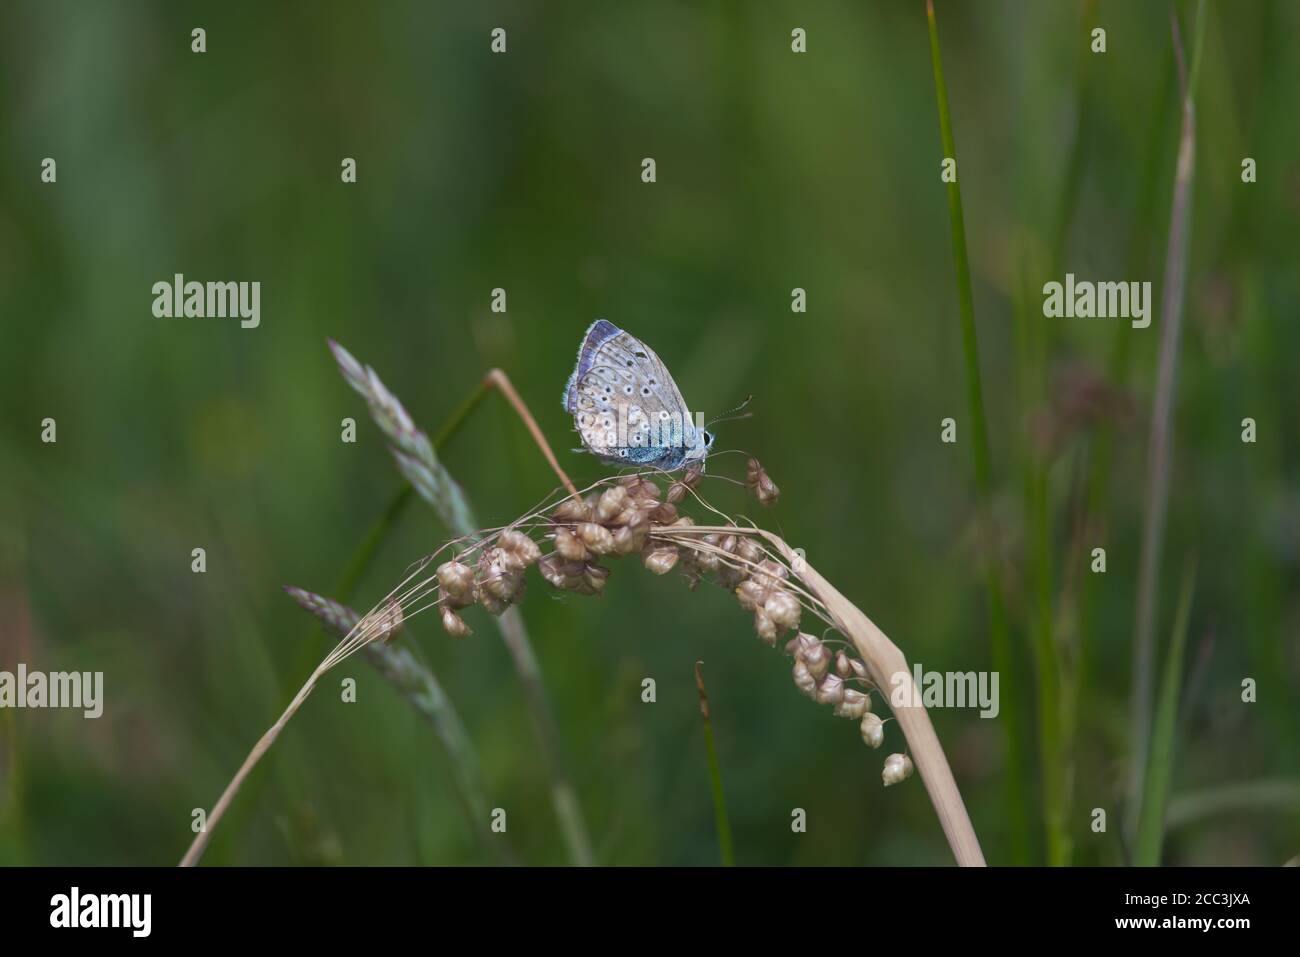 1 - le papillon bleu commun scintille contre le fond vert foncé de la prairie. Perchée sur de l'herbe sèche par temps chaud en été. Des couleurs éclatantes. Banque D'Images